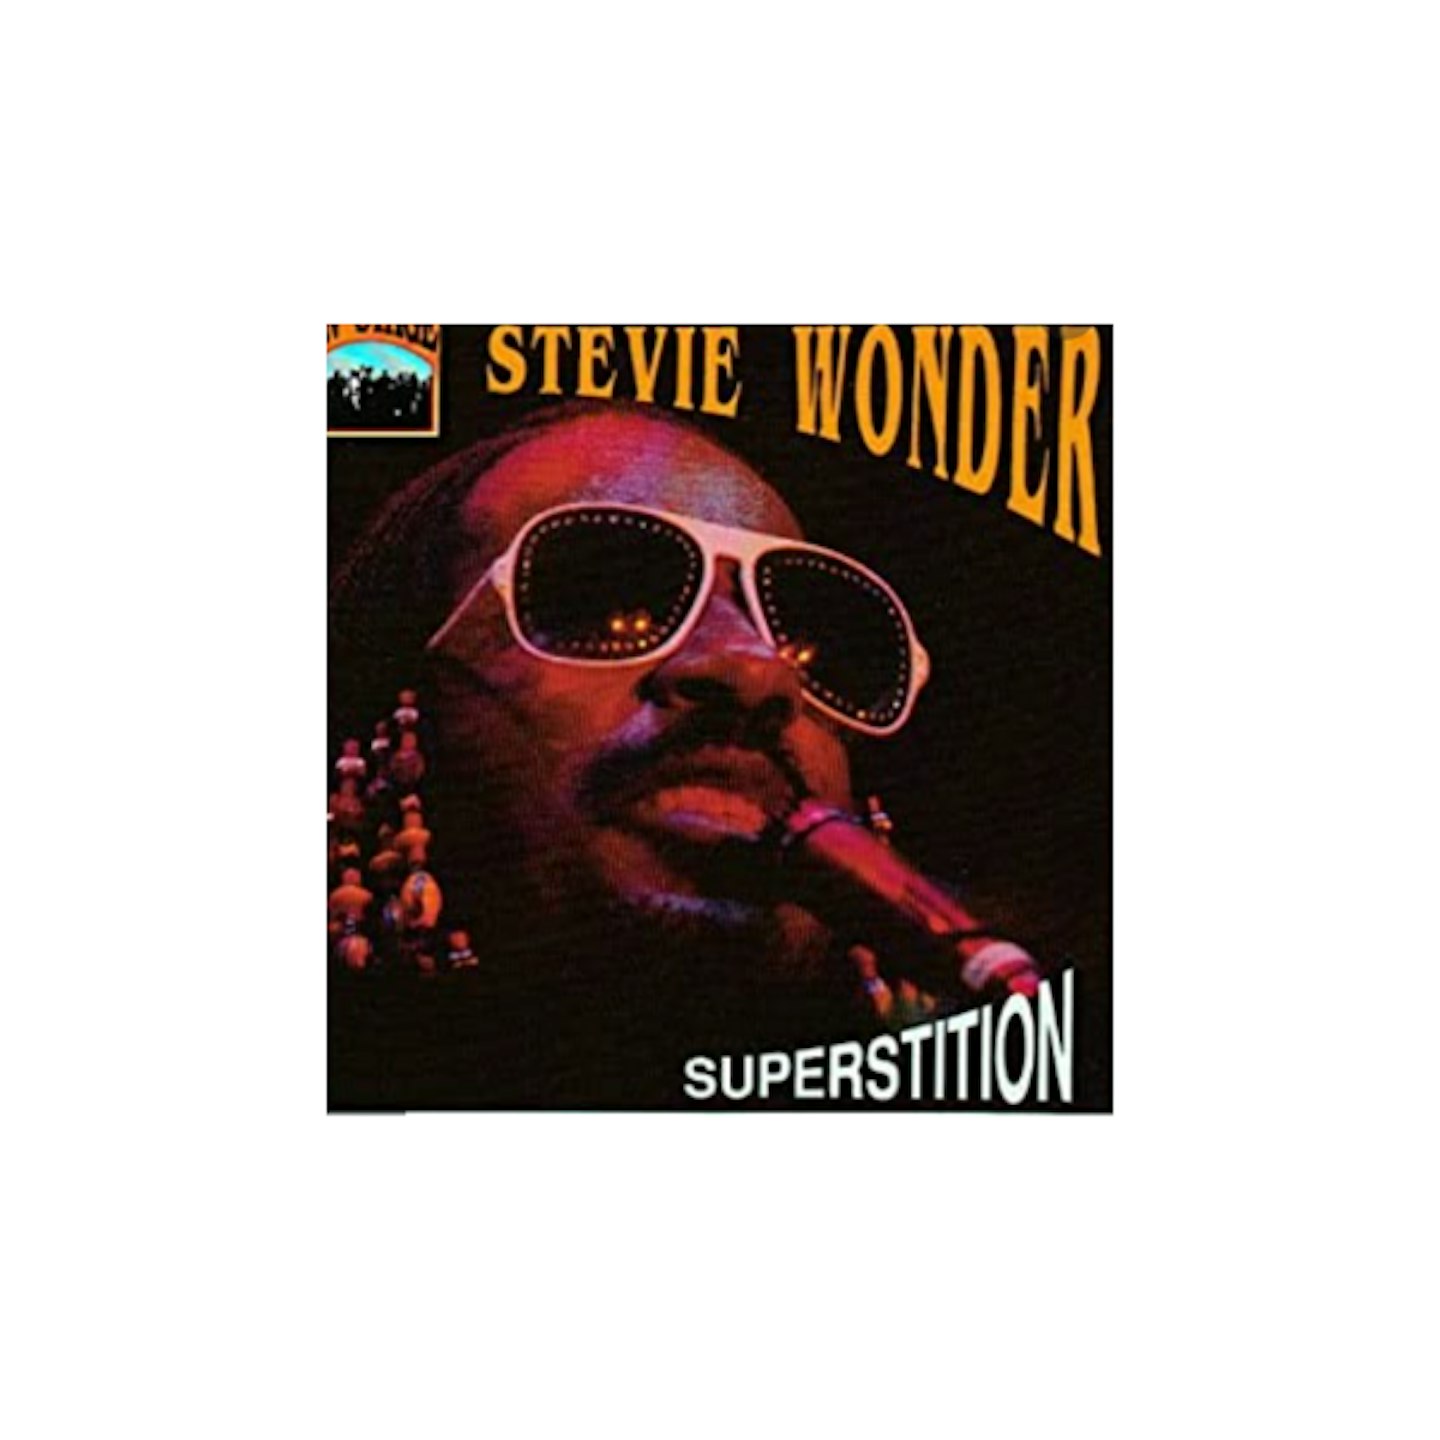 Stevie Wonder u2013 Superstition